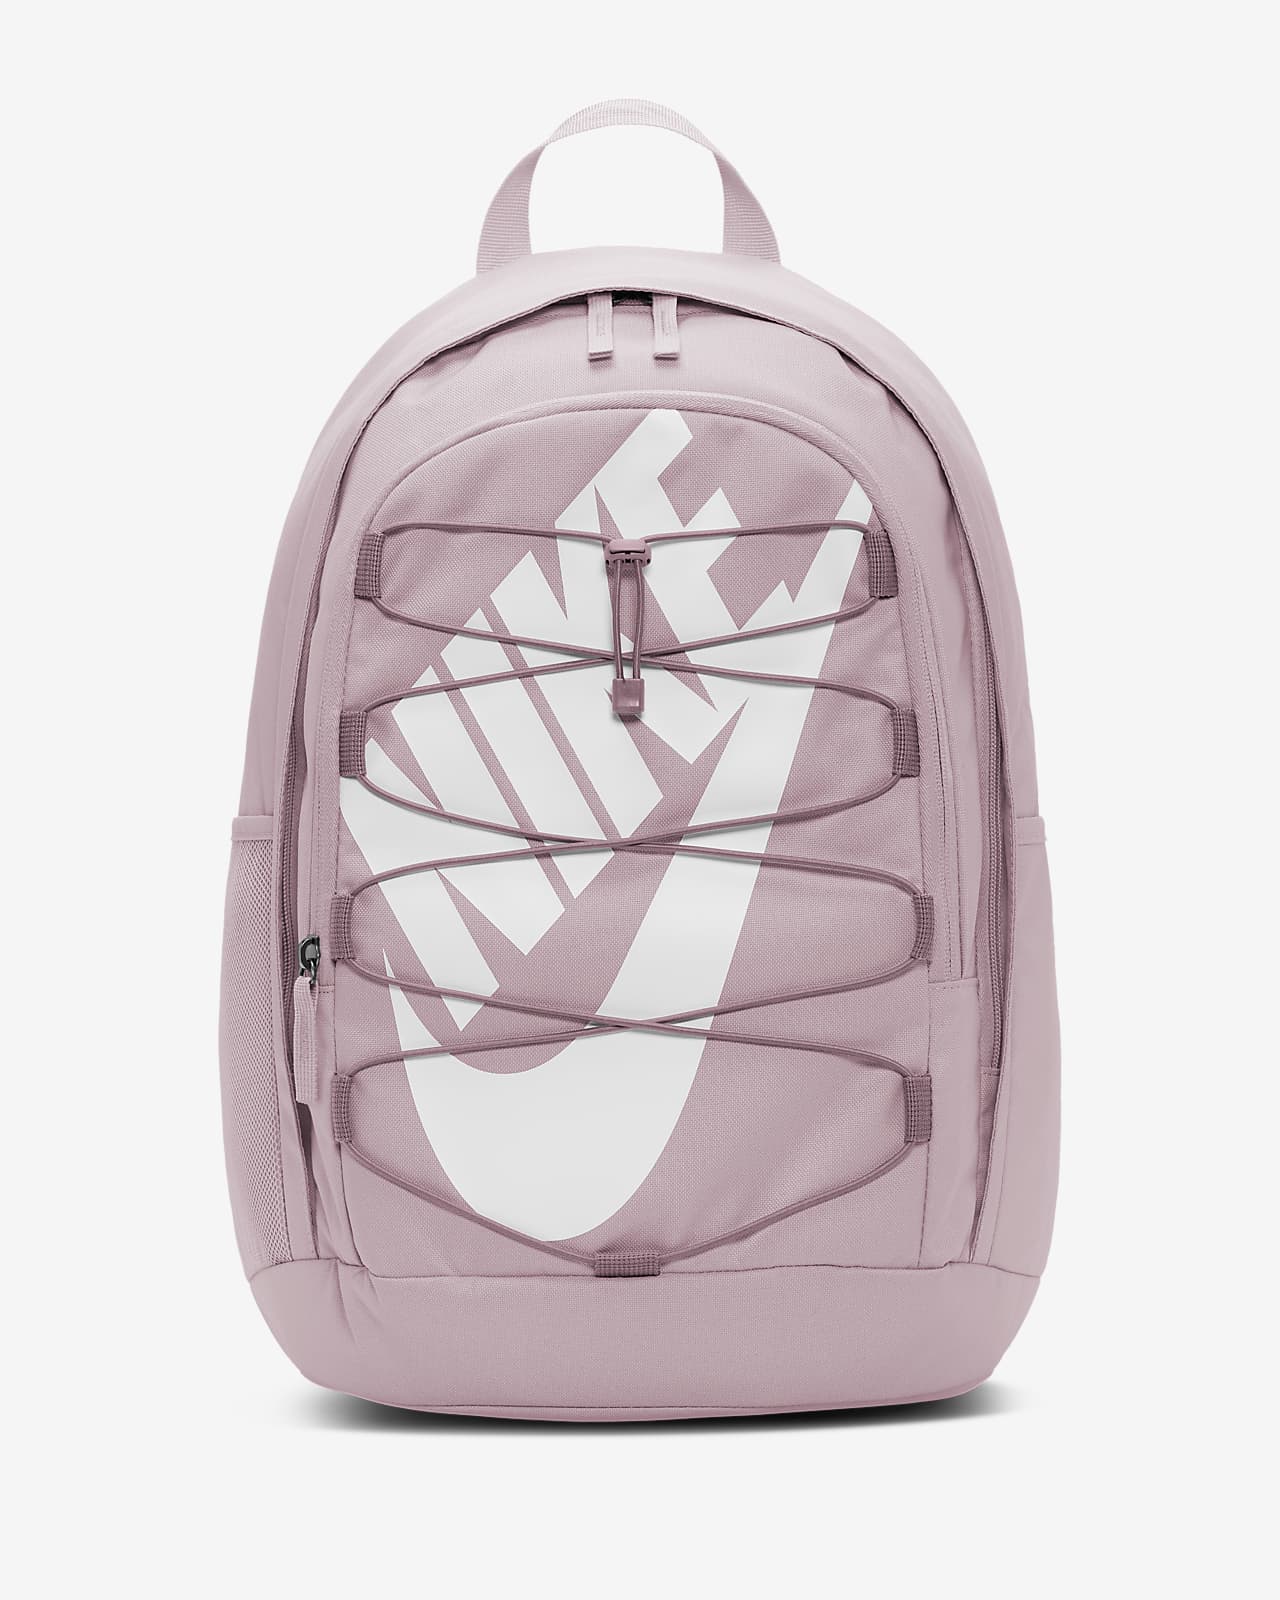 nike hayward 2.0 backpack pink